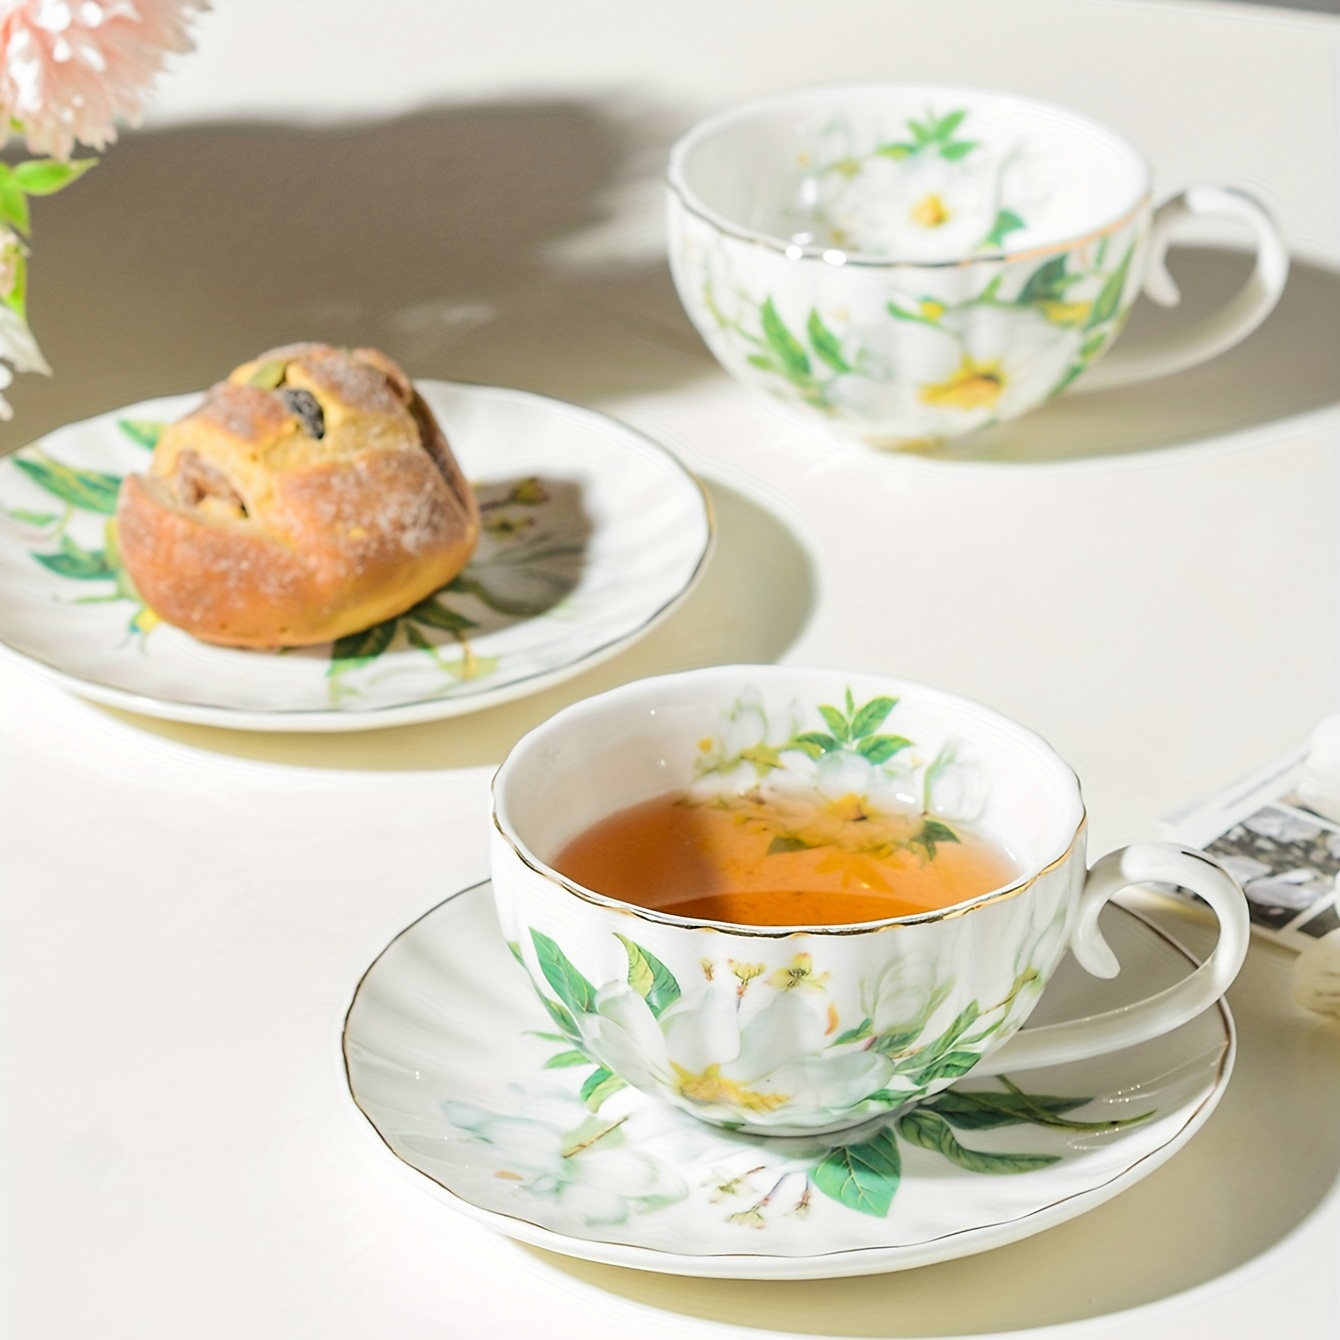 Juego de tazas de té y platillos, tazas de té Vintage, juego de té de ,  taza de té con patrón 3D de 250ml, taza de té y platillo para té, agua, 